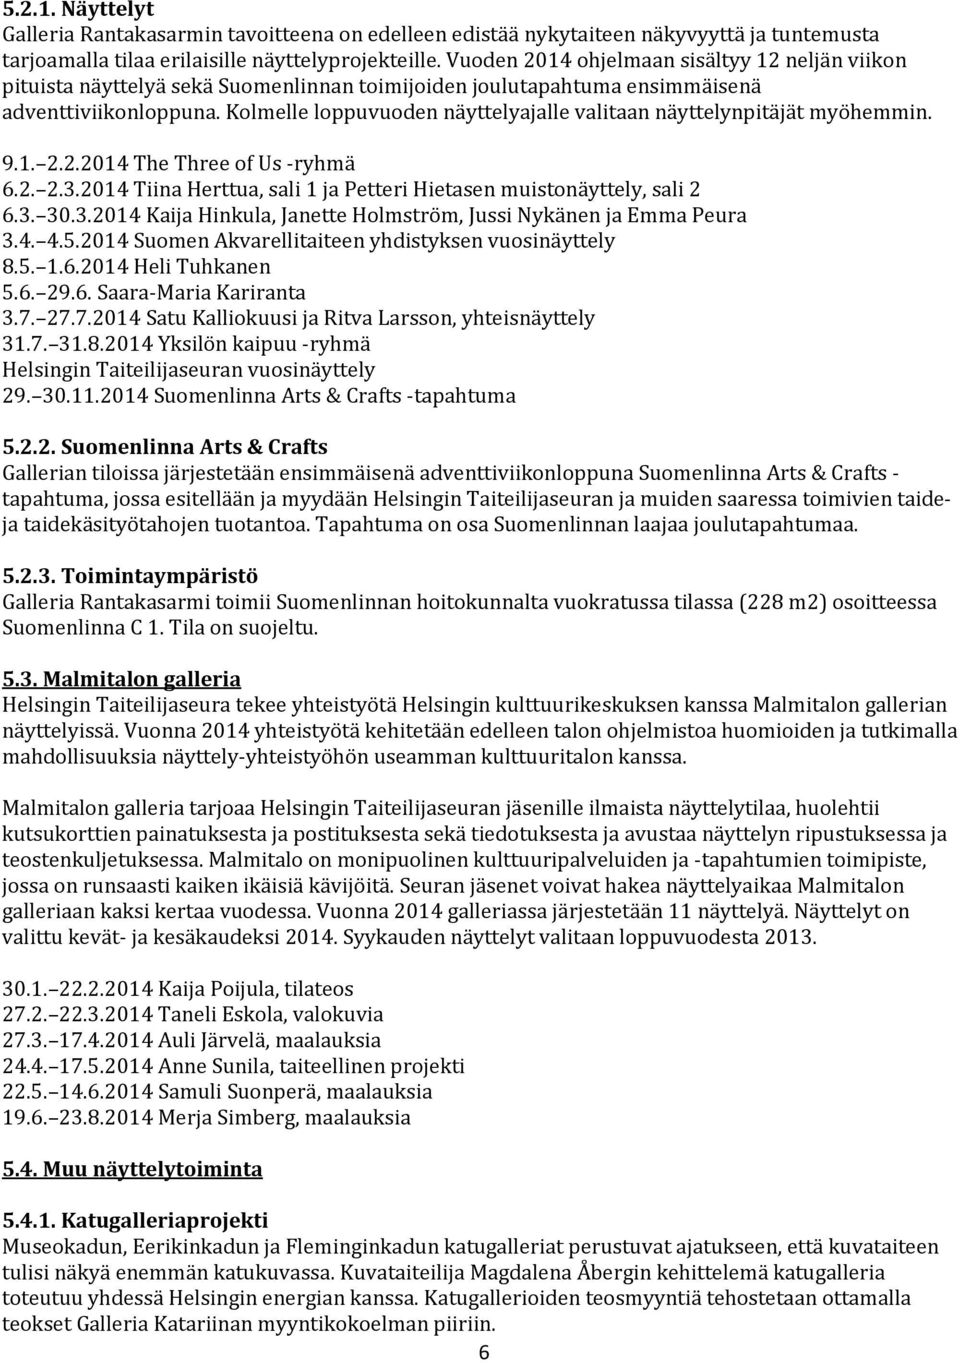 Kolmelle loppuvuoden näyttelyajalle valitaan näyttelynpitäjät myöhemmin. 9.1. 2.2.2014 The Three of Us -ryhmä 6.2. 2.3.2014 Tiina Herttua, sali 1 ja Petteri Hietasen muistonäyttely, sali 2 6.3. 30.3.2014 Kaija Hinkula, Janette Holmström, Jussi Nykänen ja Emma Peura 3.